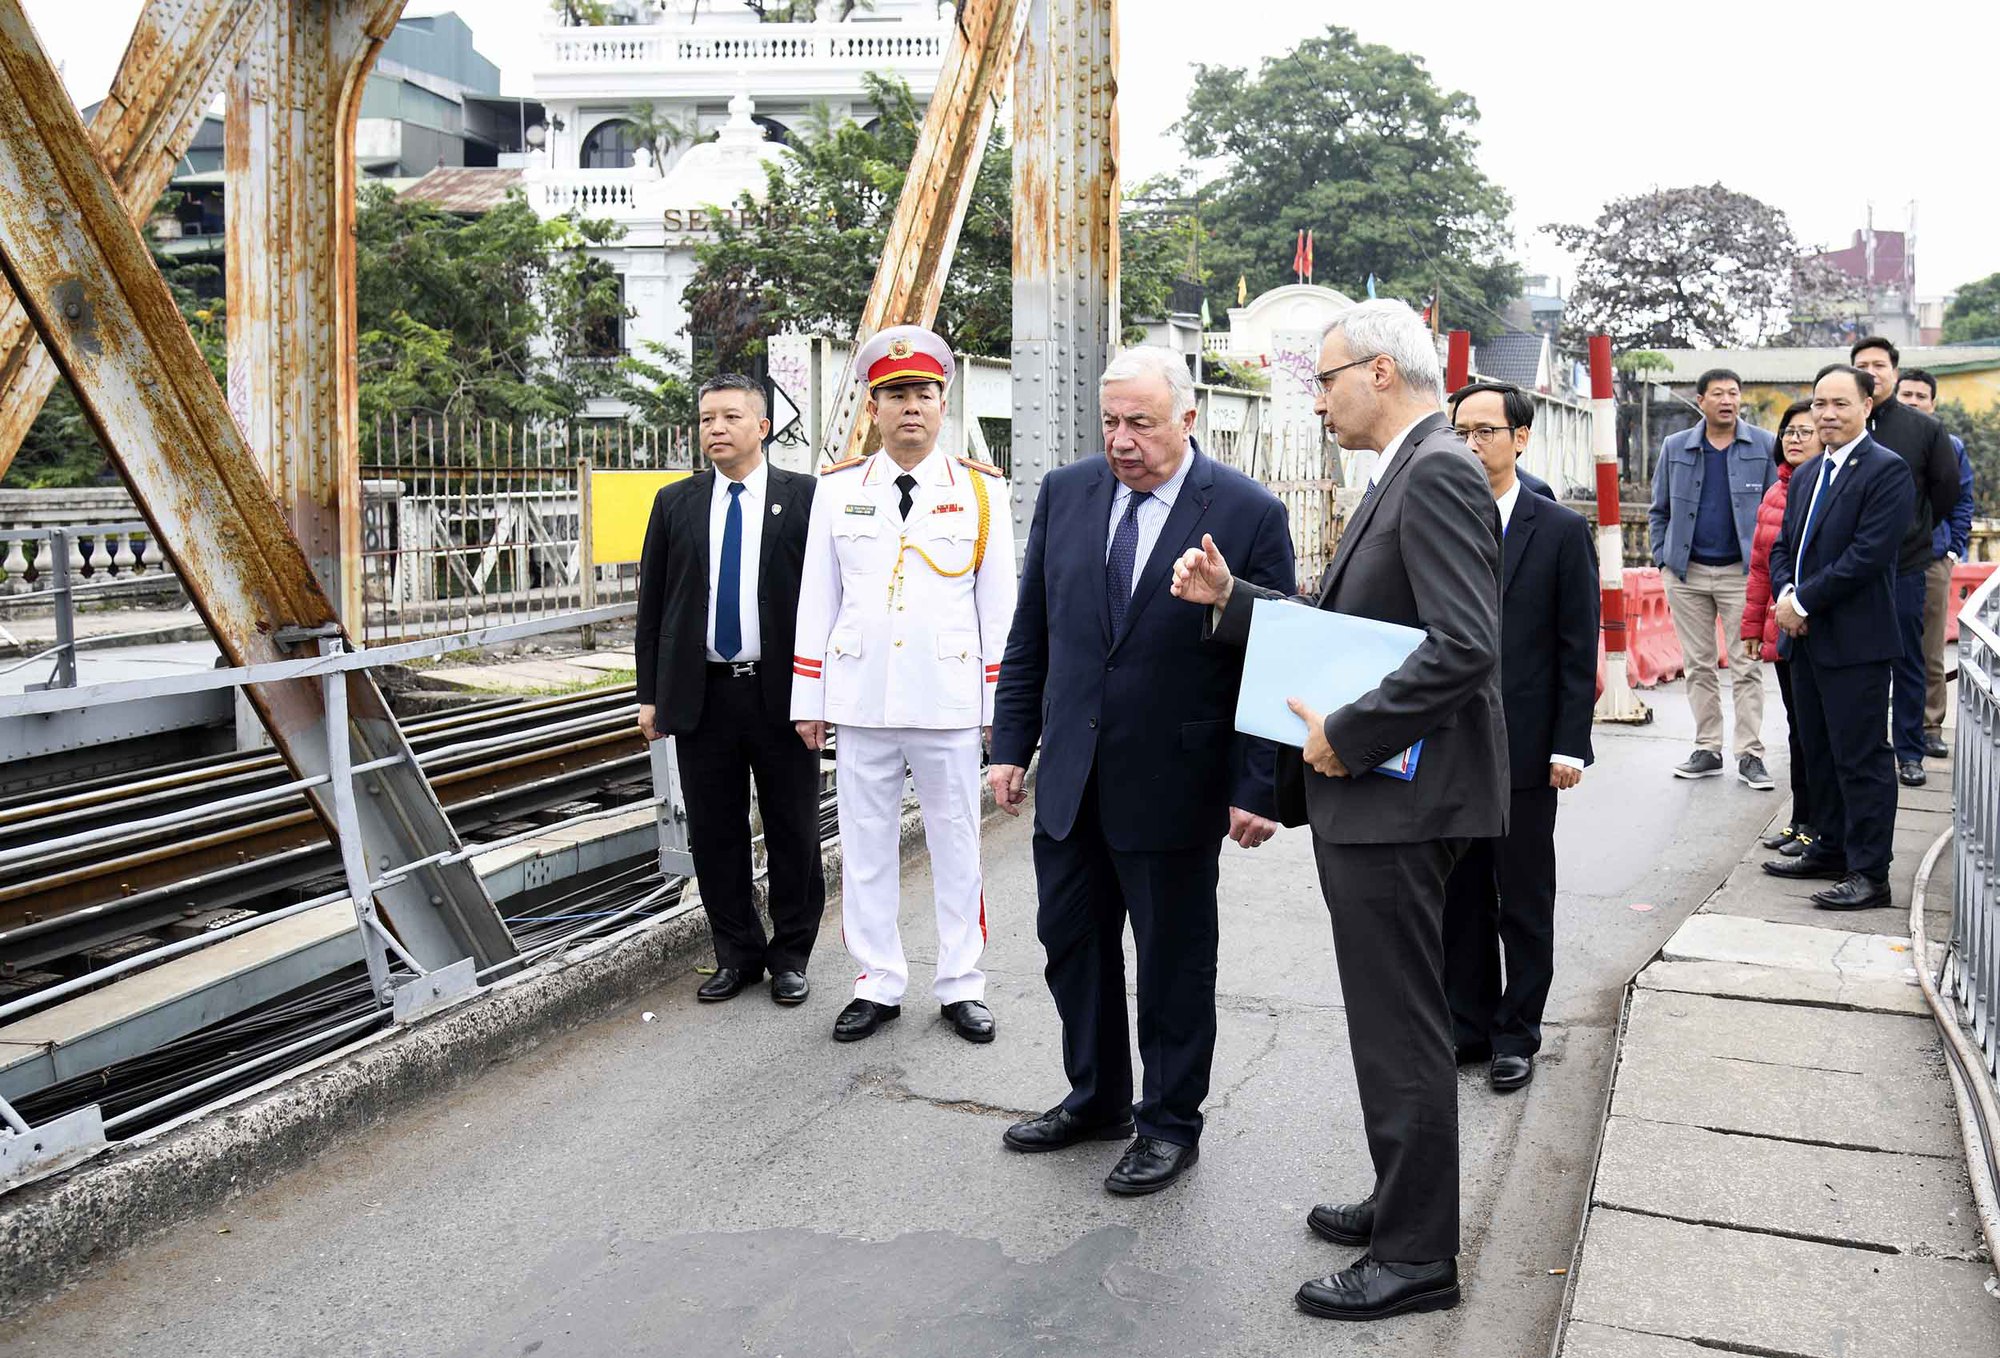 Chủ tịch Thượng viện Pháp thăm cầu Long Biên, khai trương cơ sở mới của Viện Pháp tại Hà Nội - Ảnh 1.